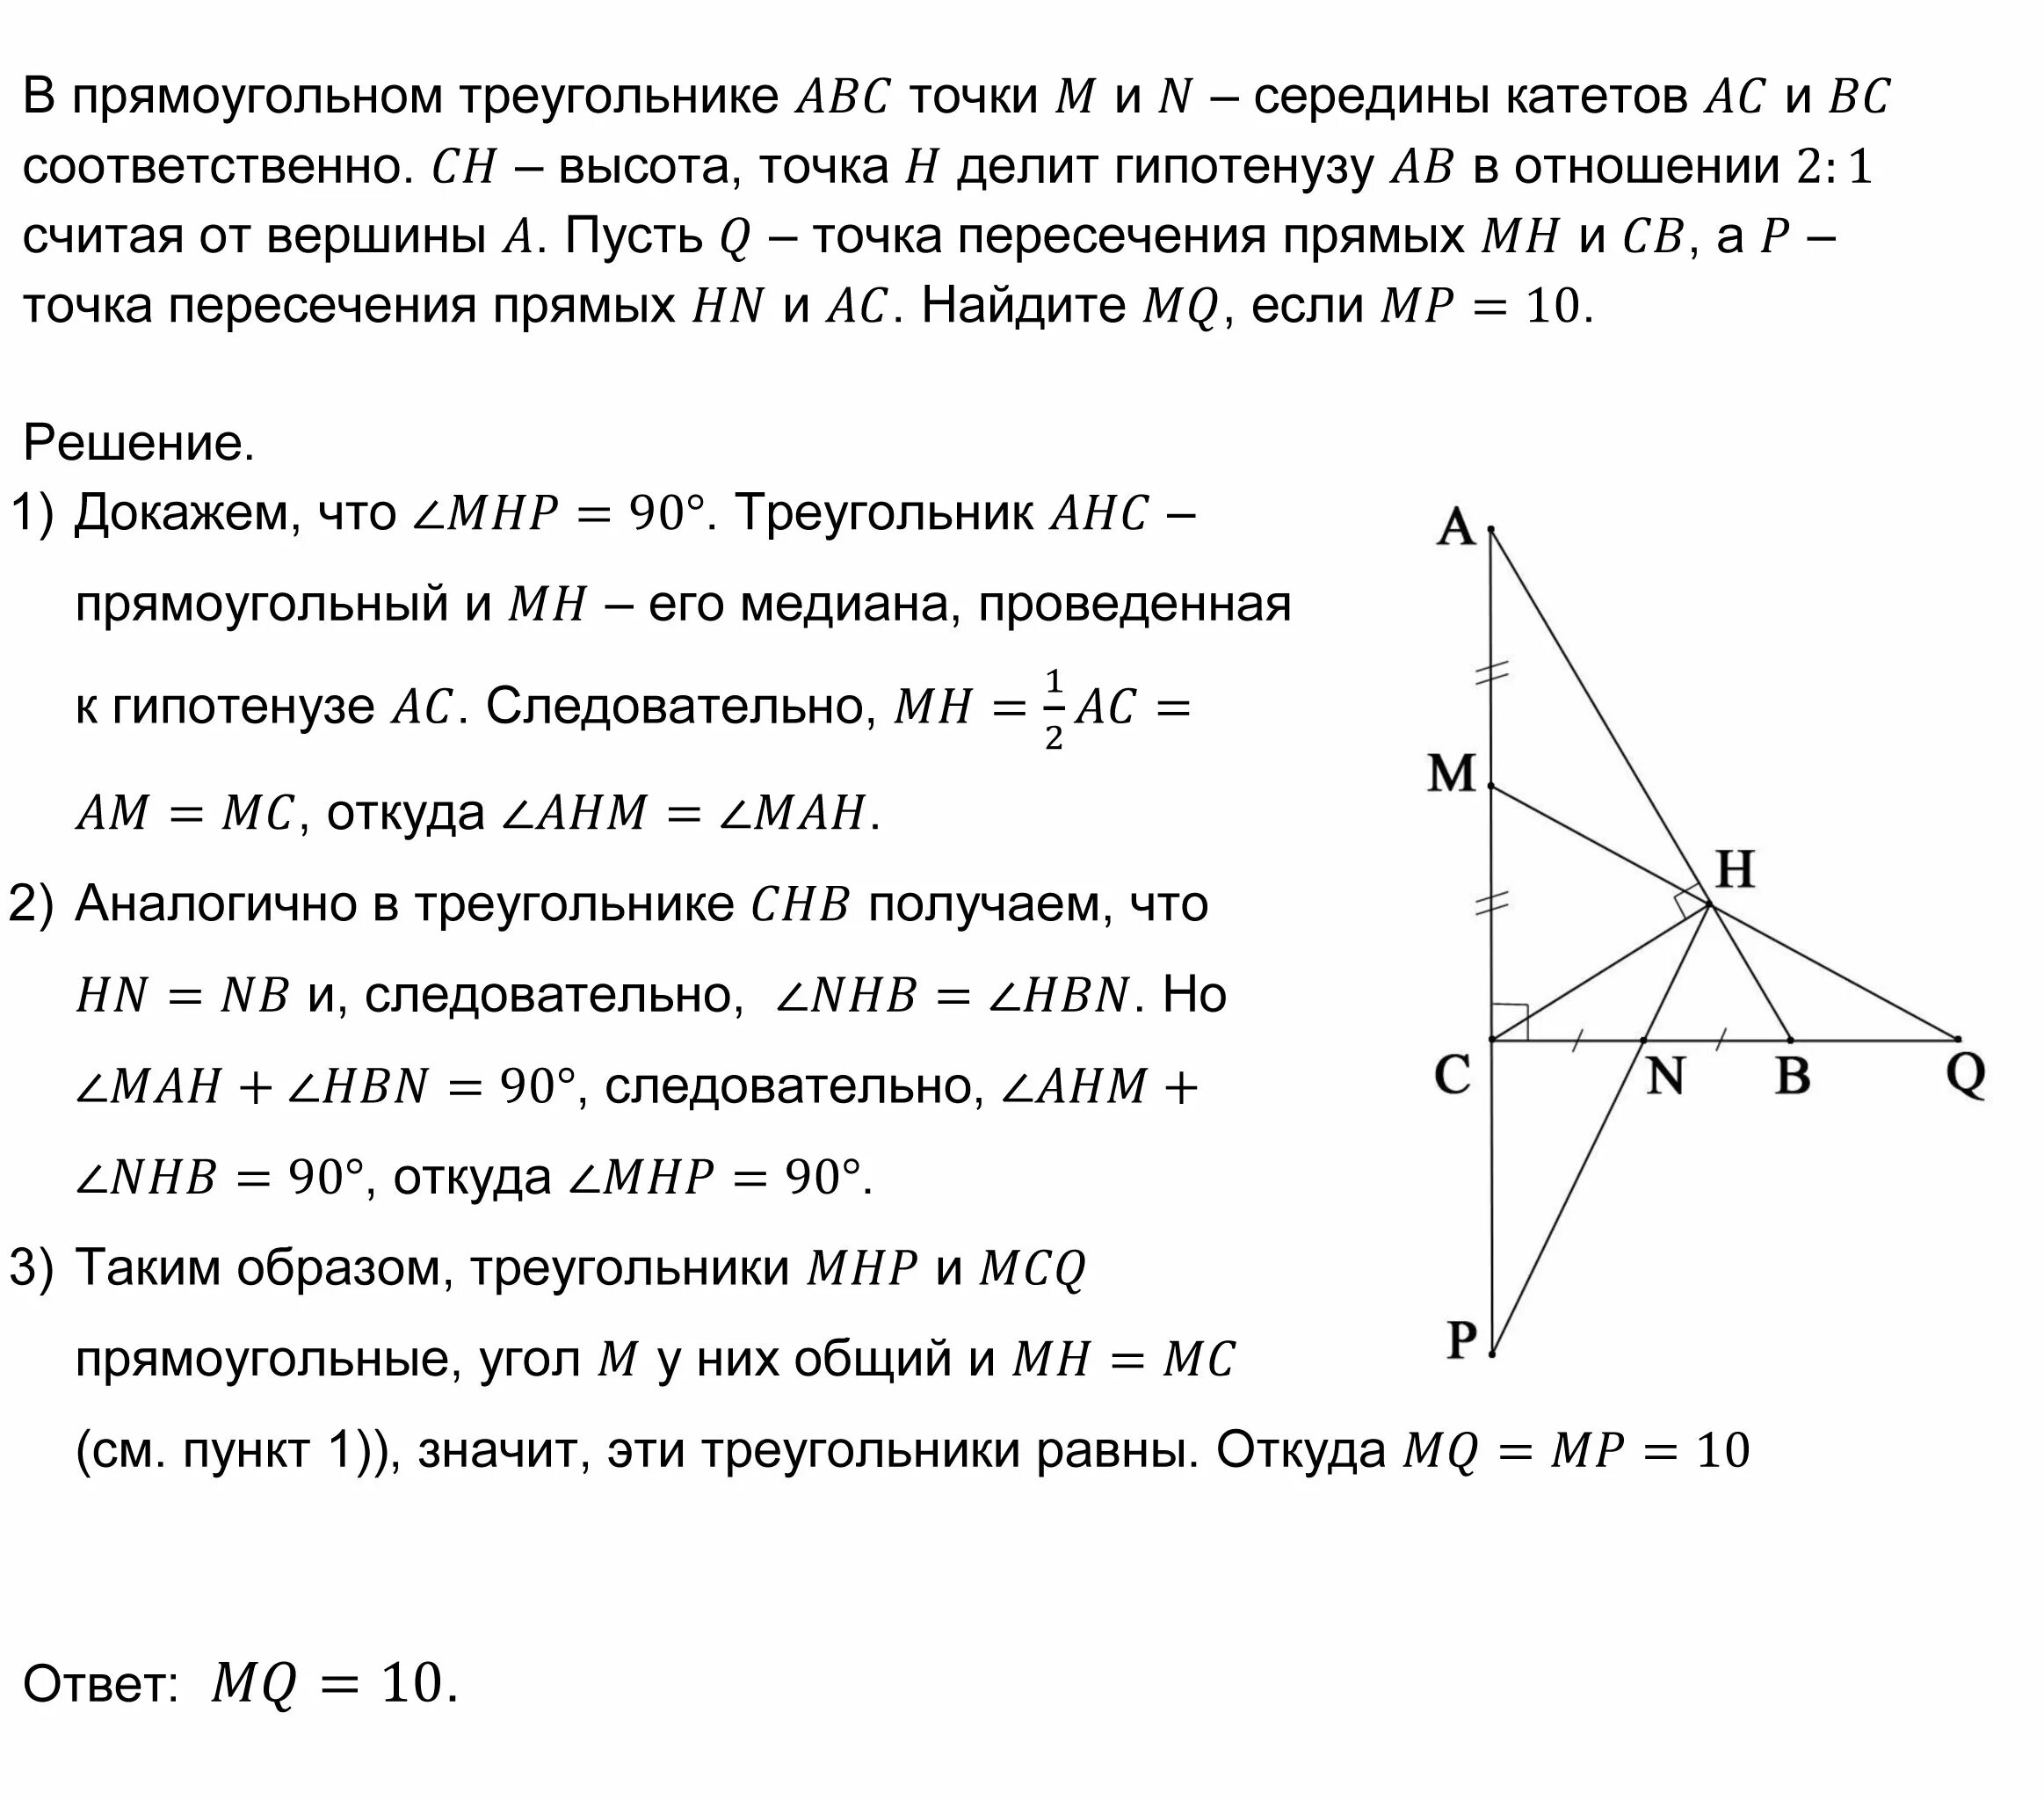 В треугольнике abc через середину медианы. Эриксон график точки АВС. Варианты связи в 25 задании. Свойство Медианы в таблице 10 штук.